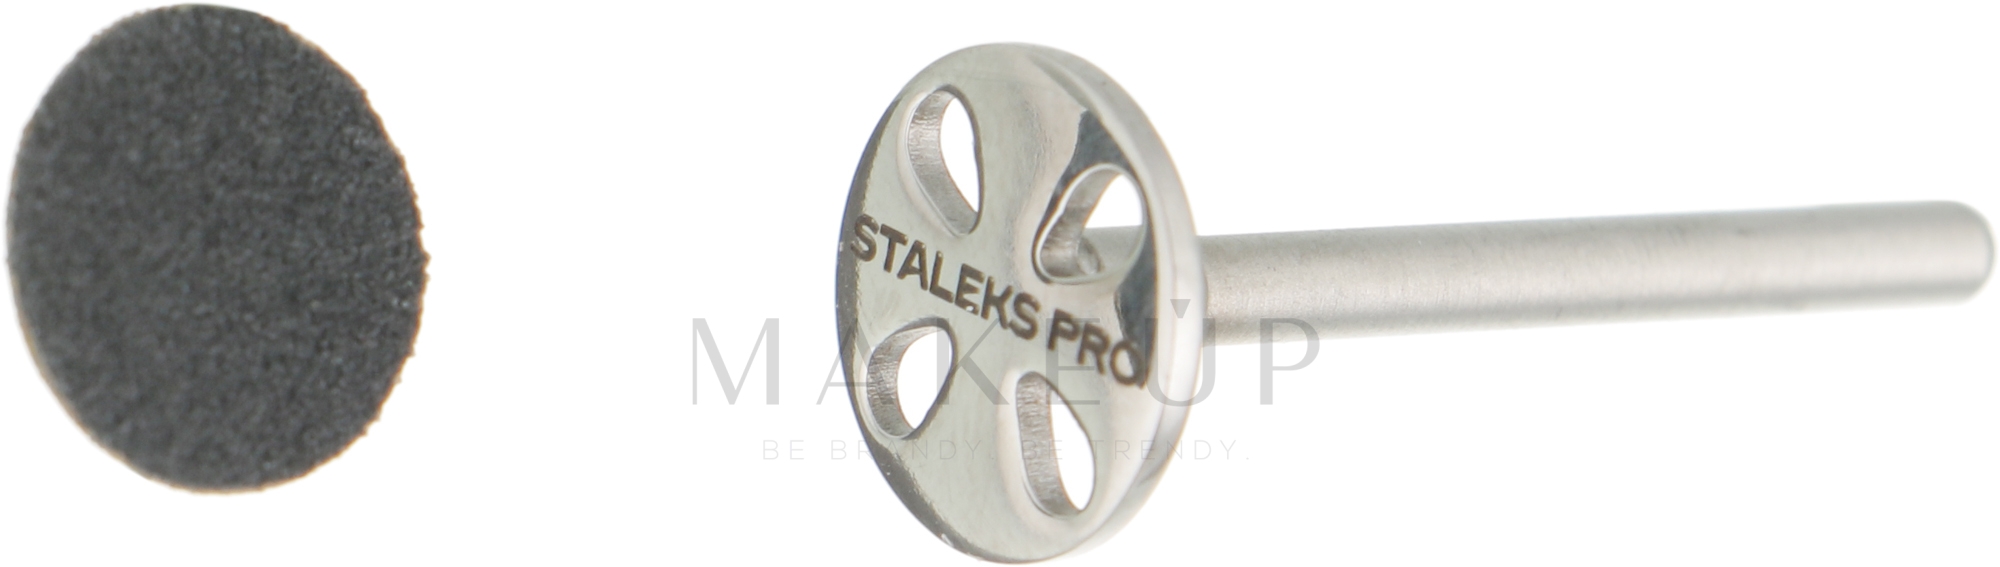 Pediküre-Disk 10 mm mit Ersatzscheibe Körnung 180 - Staleks Pro — Bild 5 St.